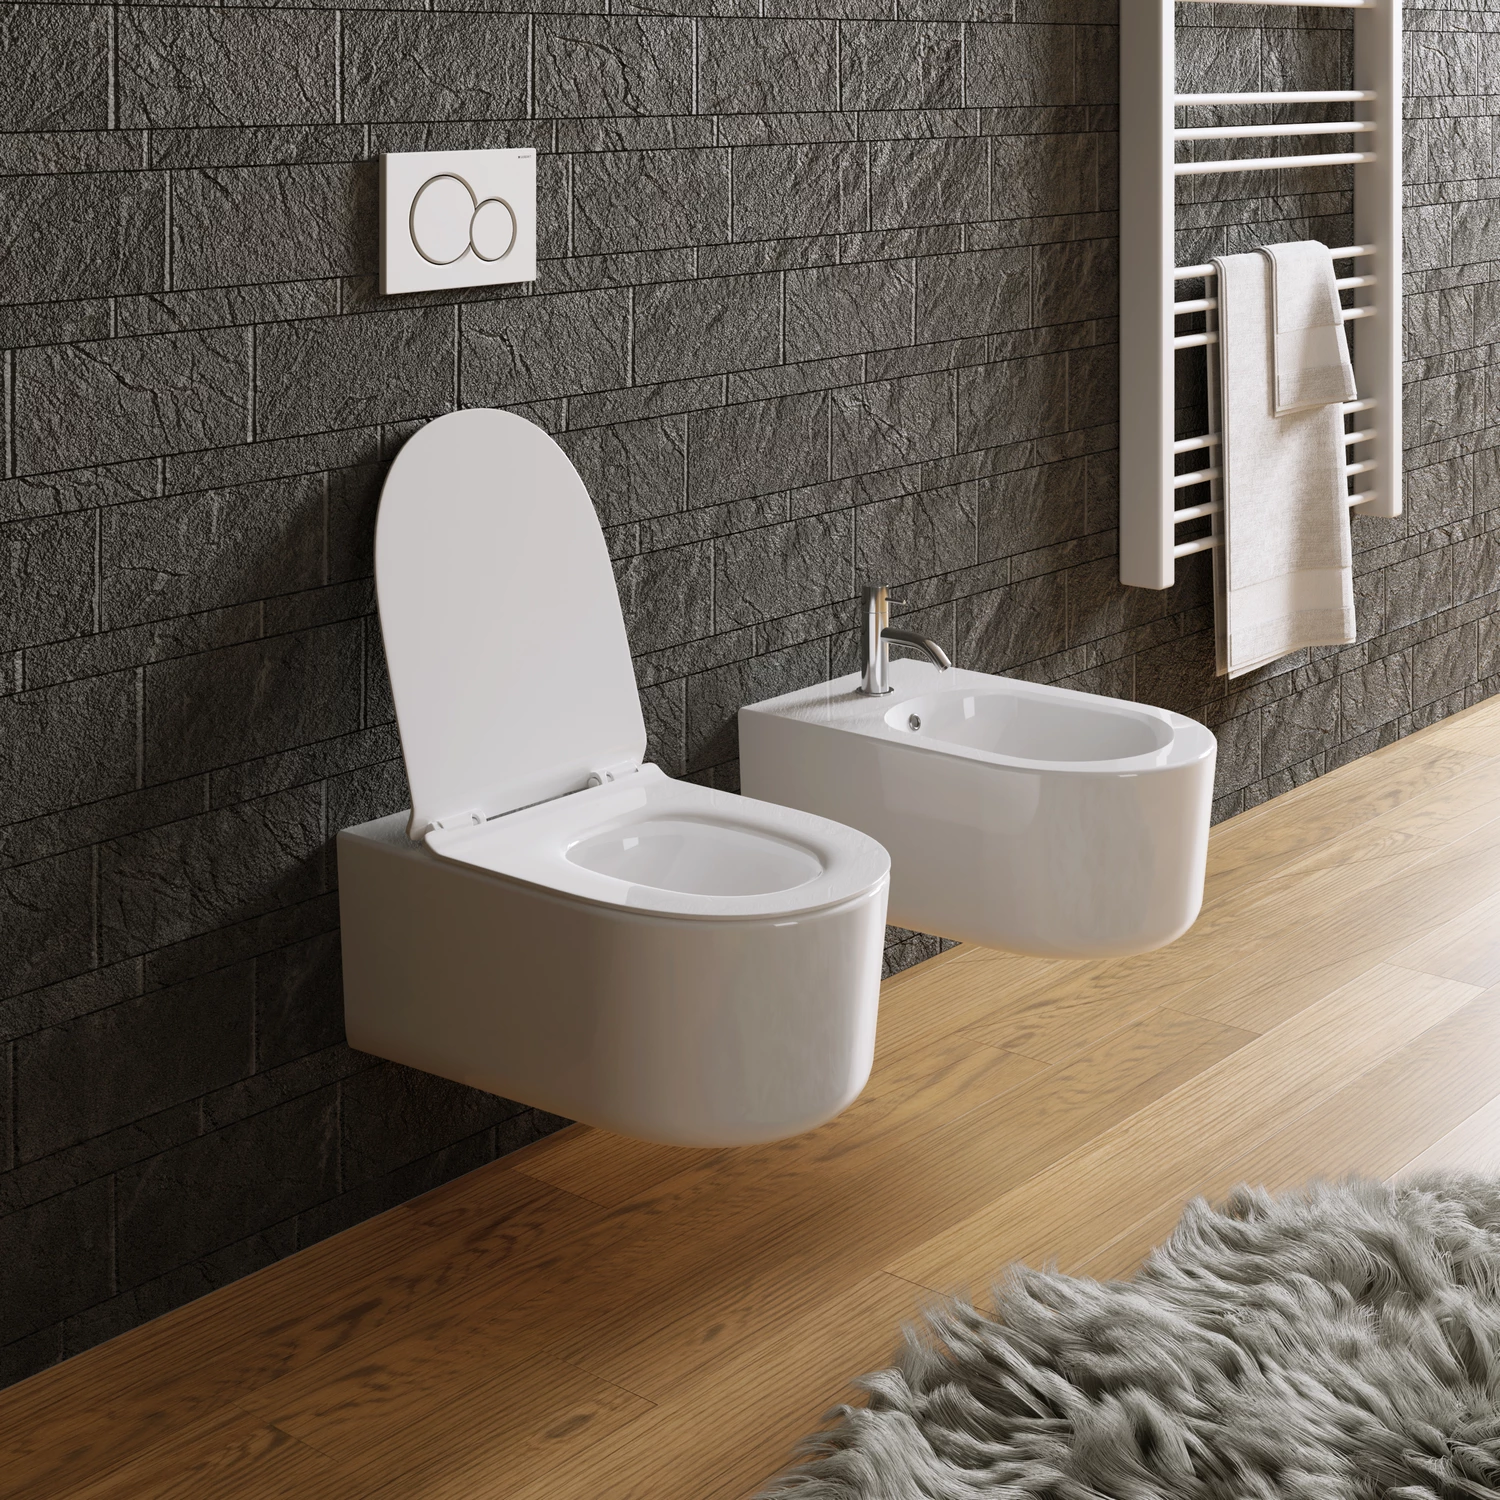 Sanitari sospesi in ceramica per bagno con copri-wc in termoindurente | Dublino